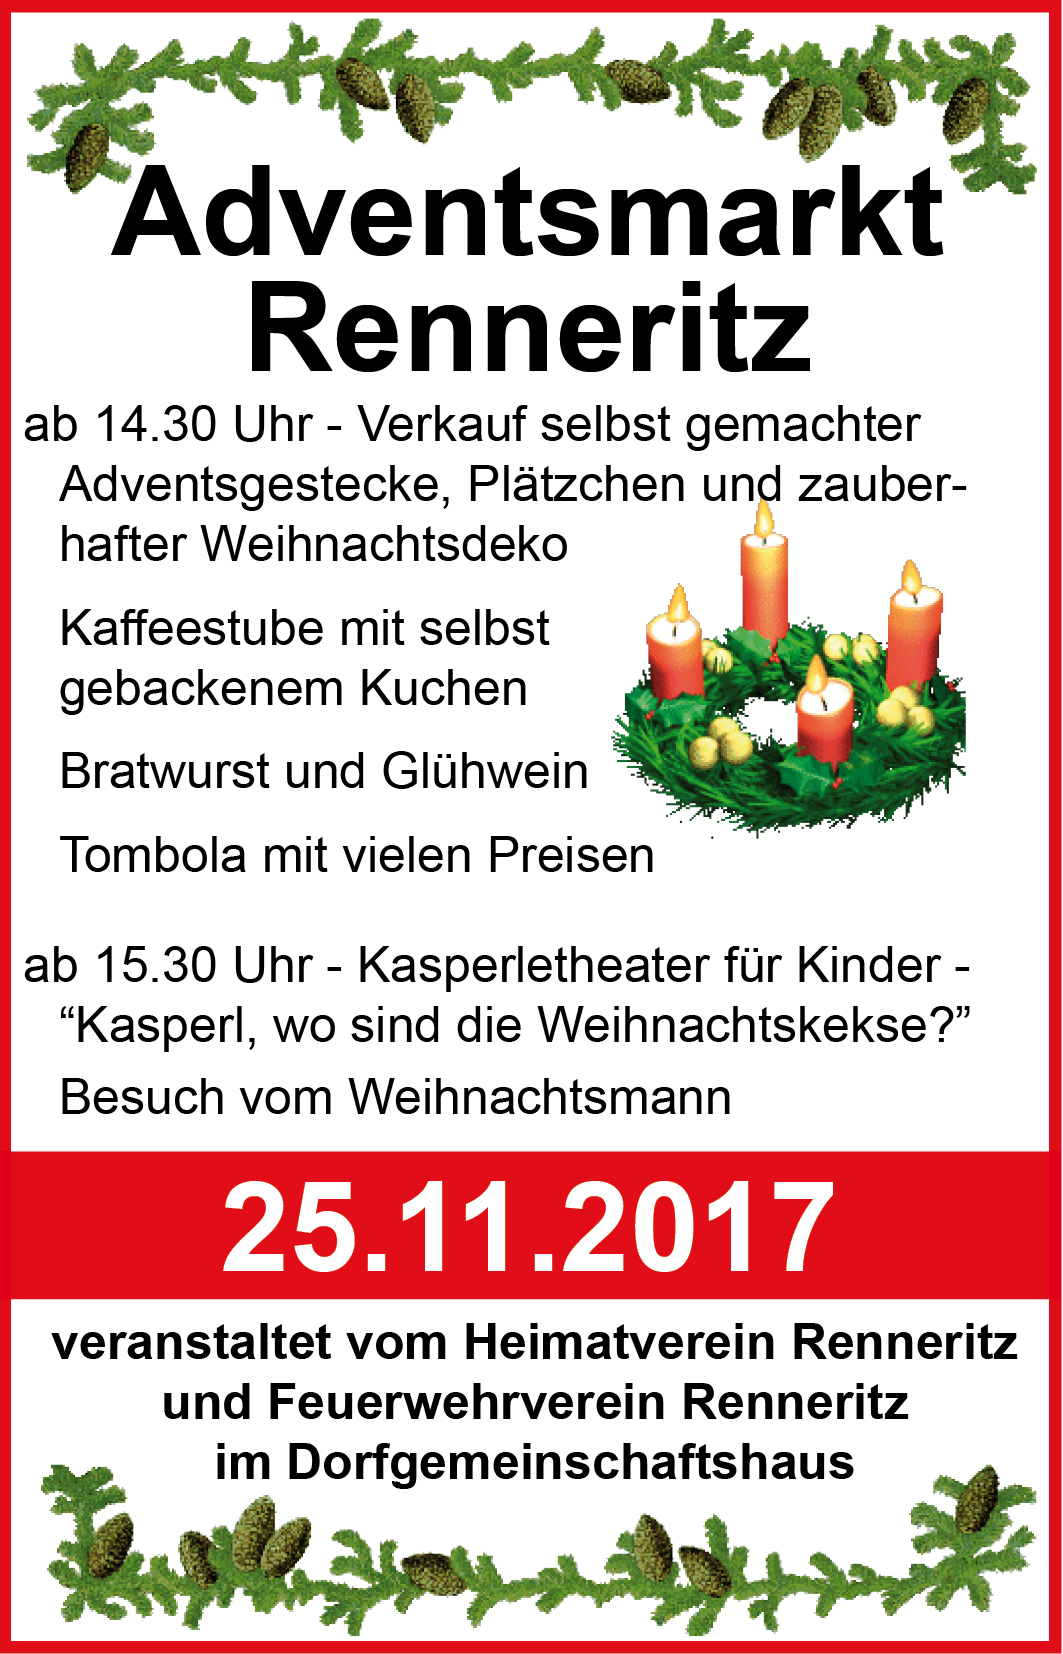 Adventsmarkt in Renneritz